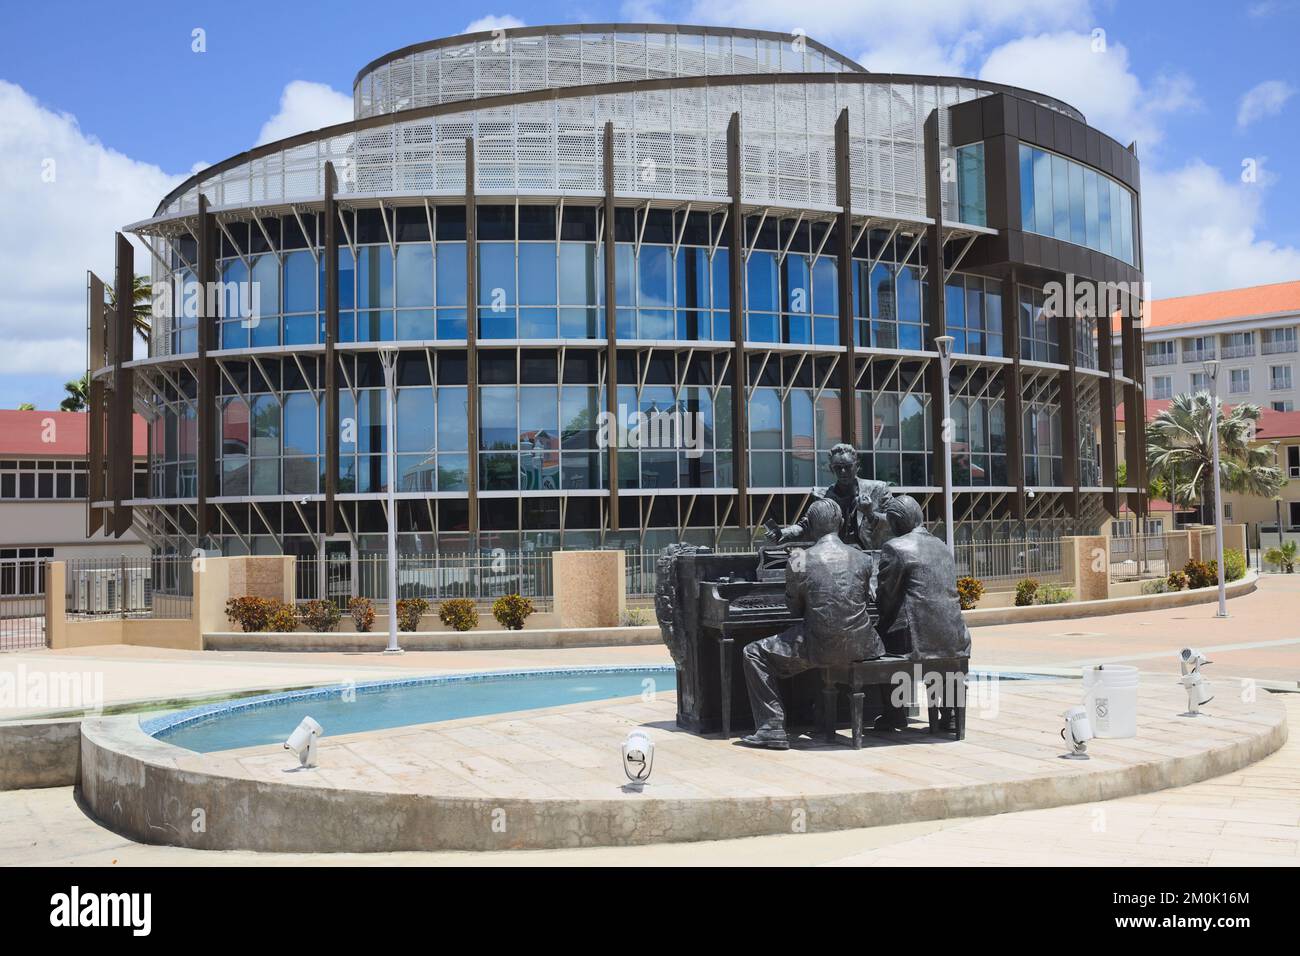 ORANJESTAD, ARUBA - 17 JUILLET 2022 : Plaza Padu avec sculpture et fontaine et bâtiment du gouvernement dans le centre-ville d'Oranjestad sur Aruba Banque D'Images